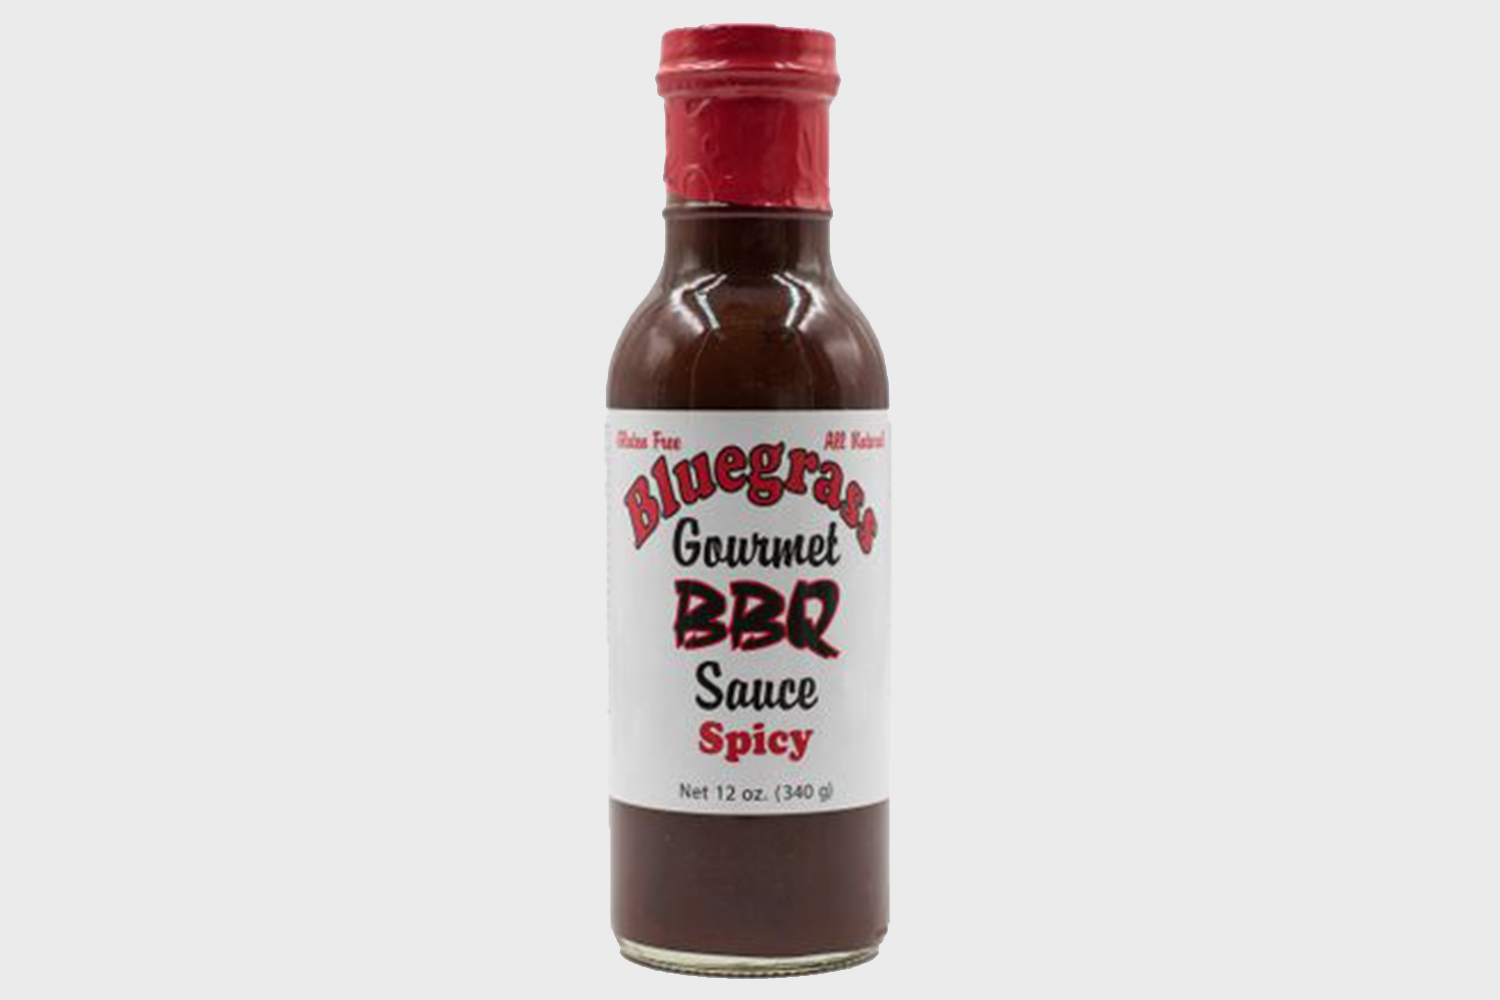 Bluegrass BBQ Sauce spicy